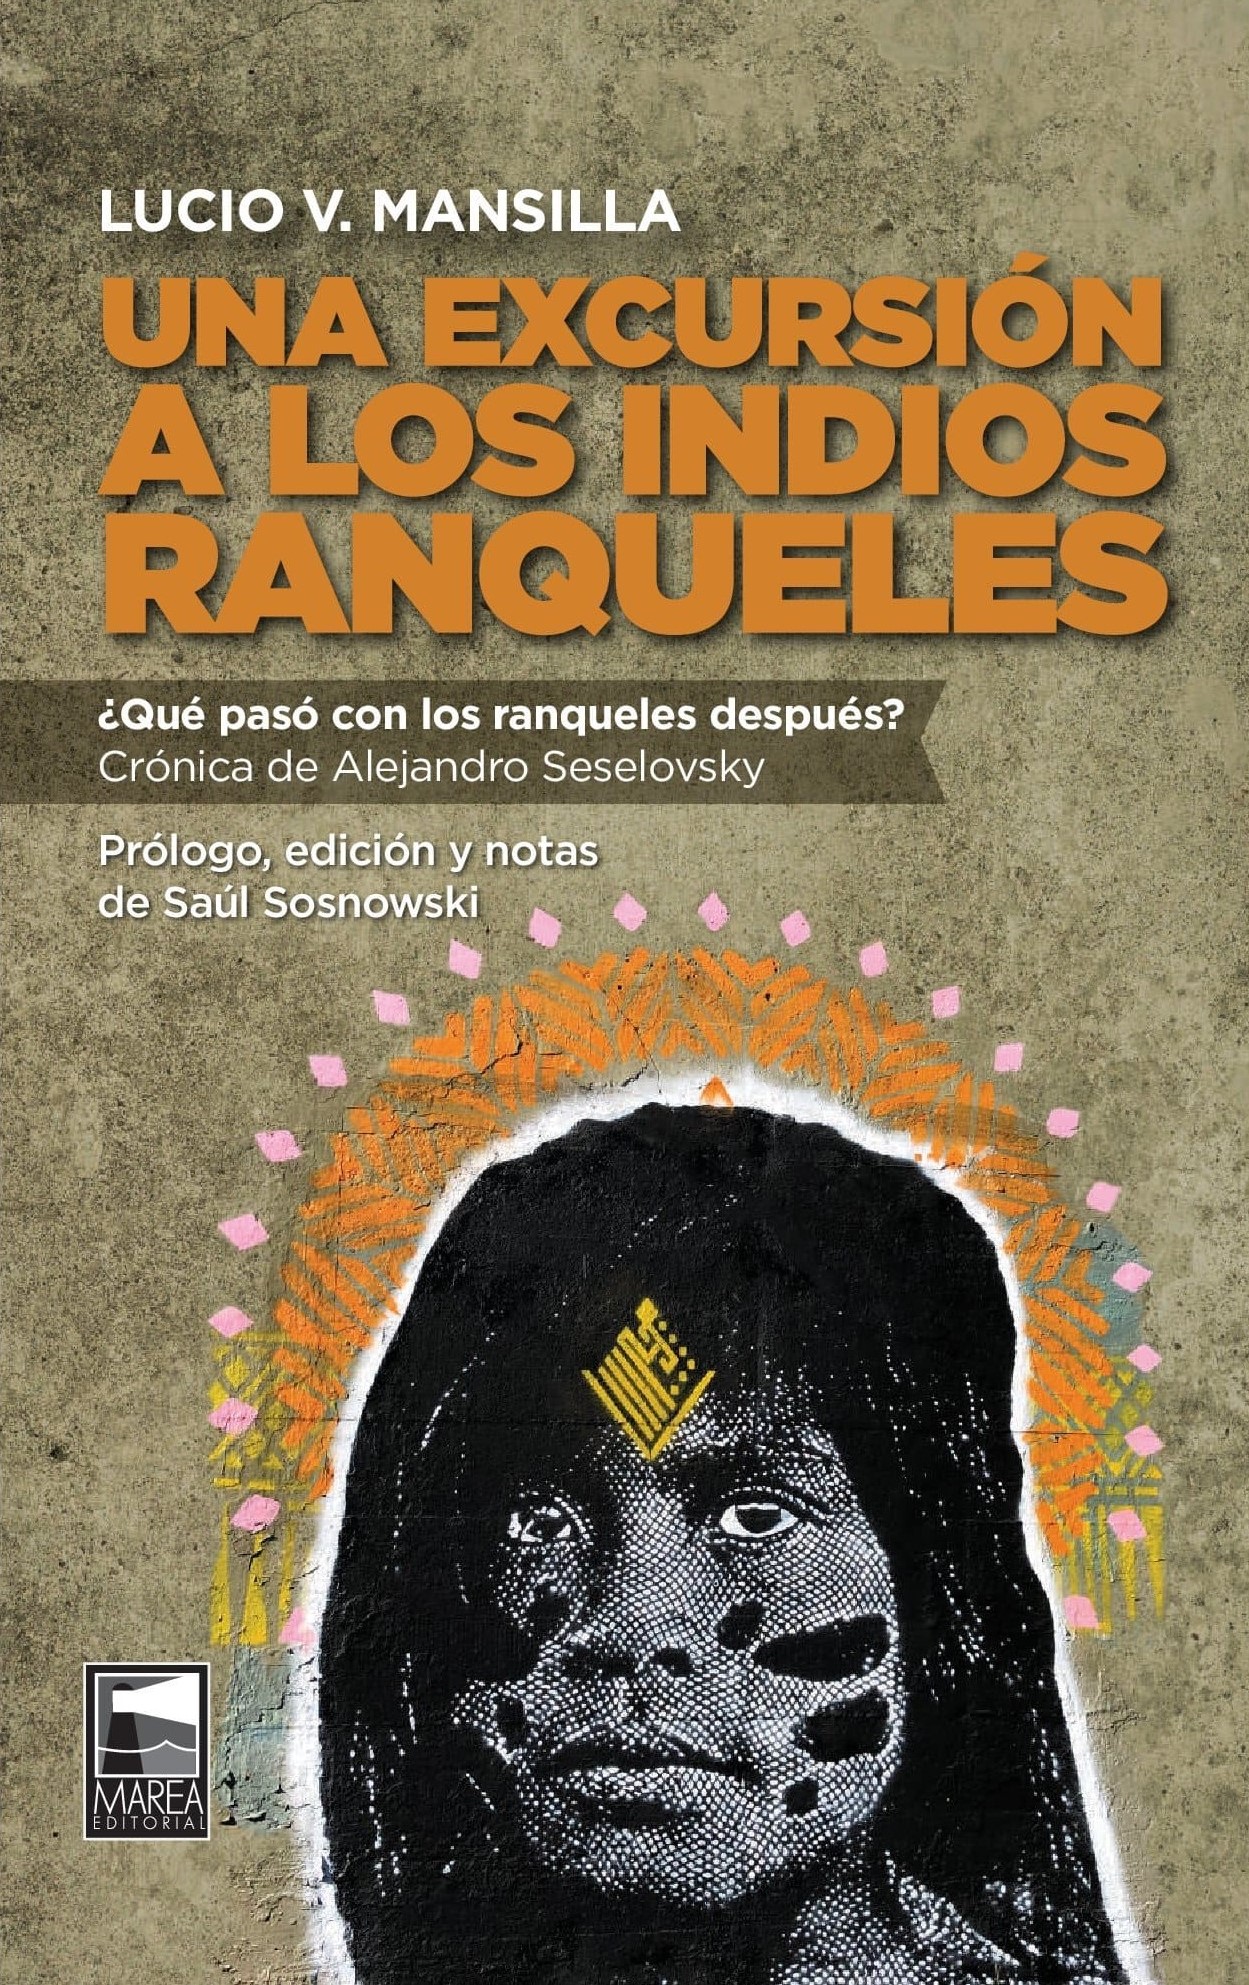 Una excursión a los indios ranqueles de Lucio Mansilla - Marea Editorial